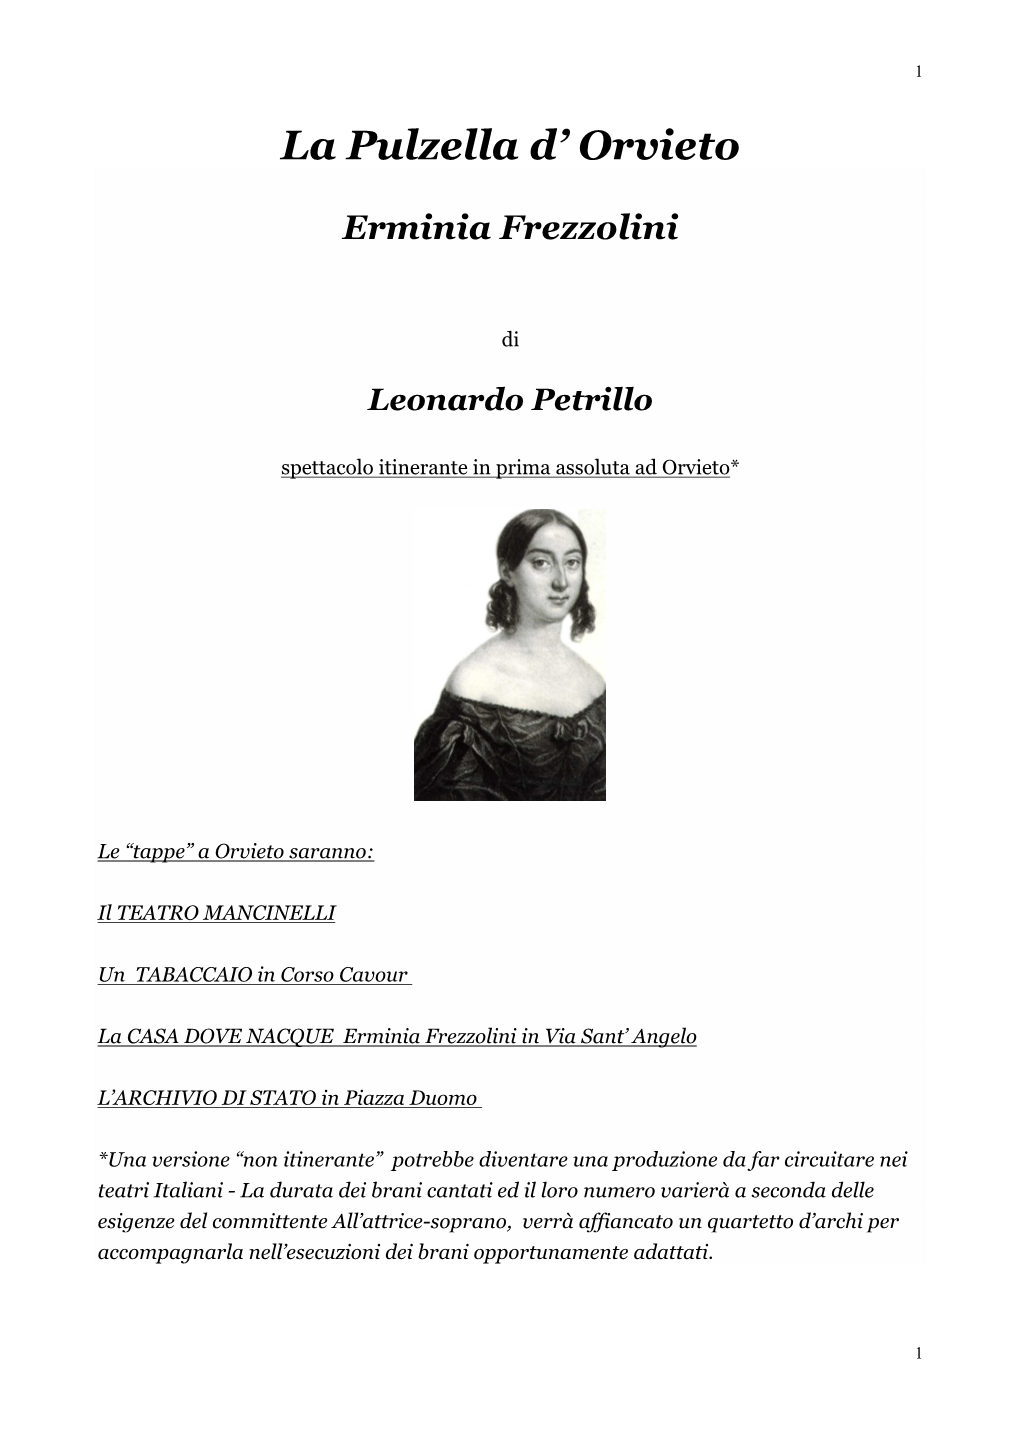 La Pulzella D' Orvieto Erminia Frezzolini